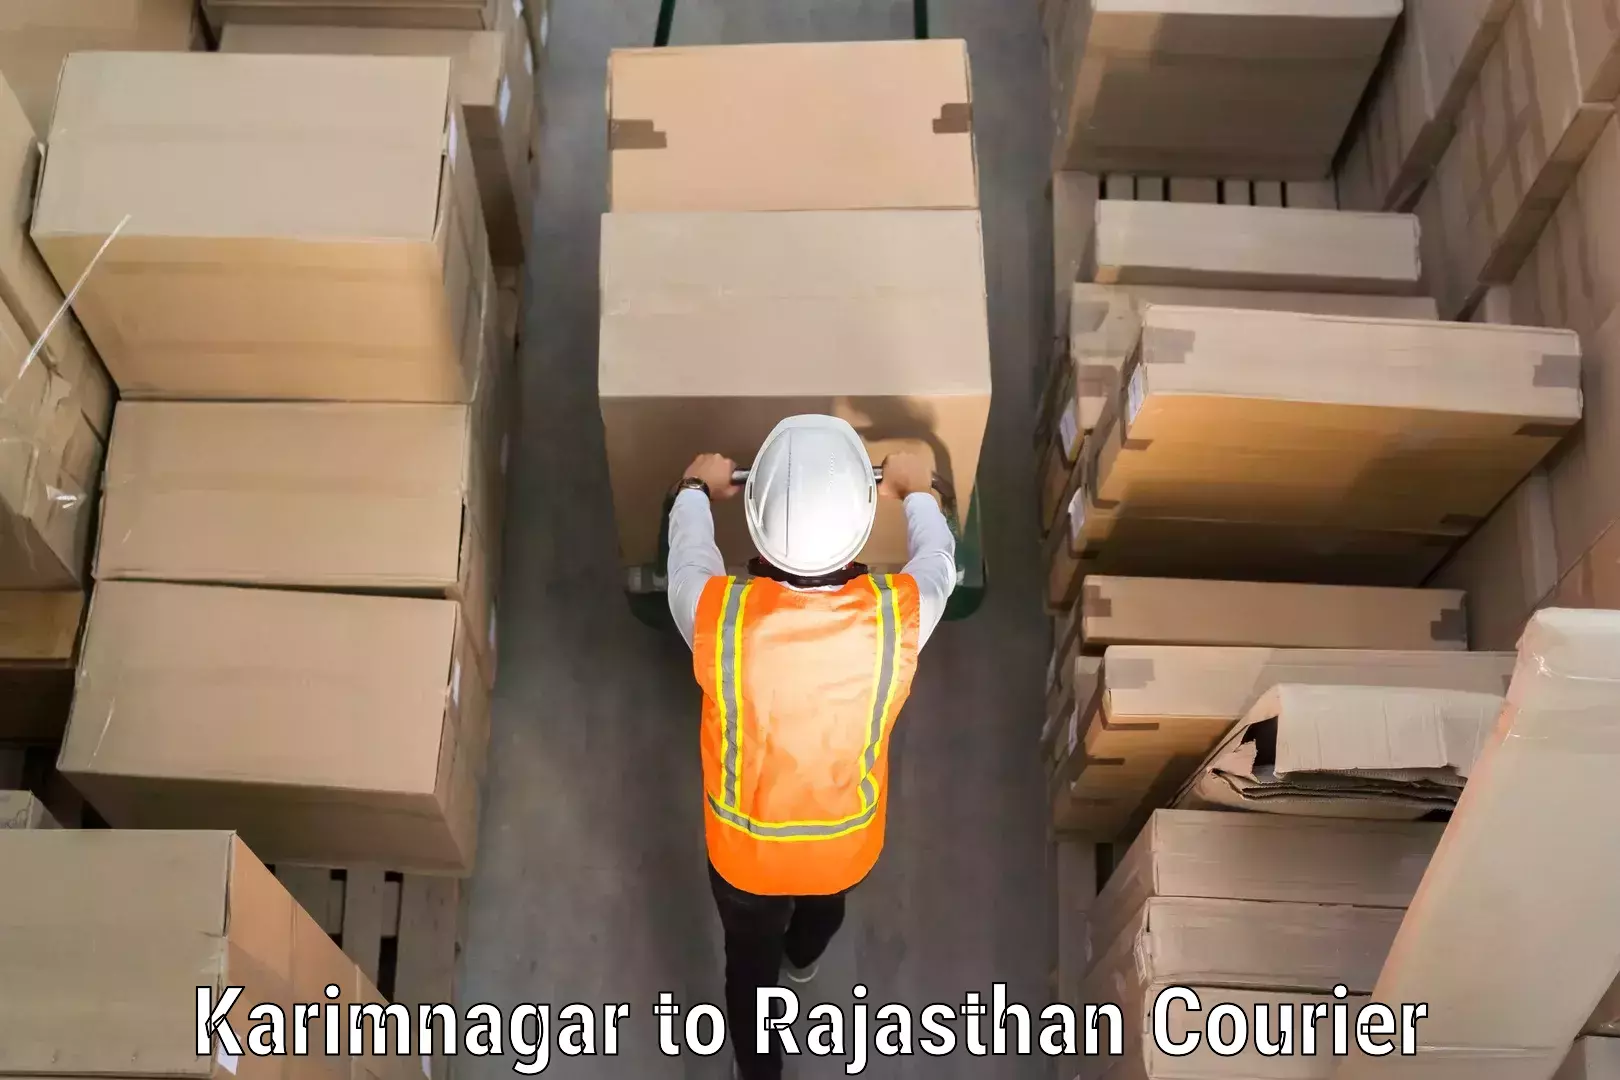 Luggage delivery app Karimnagar to Chaksu